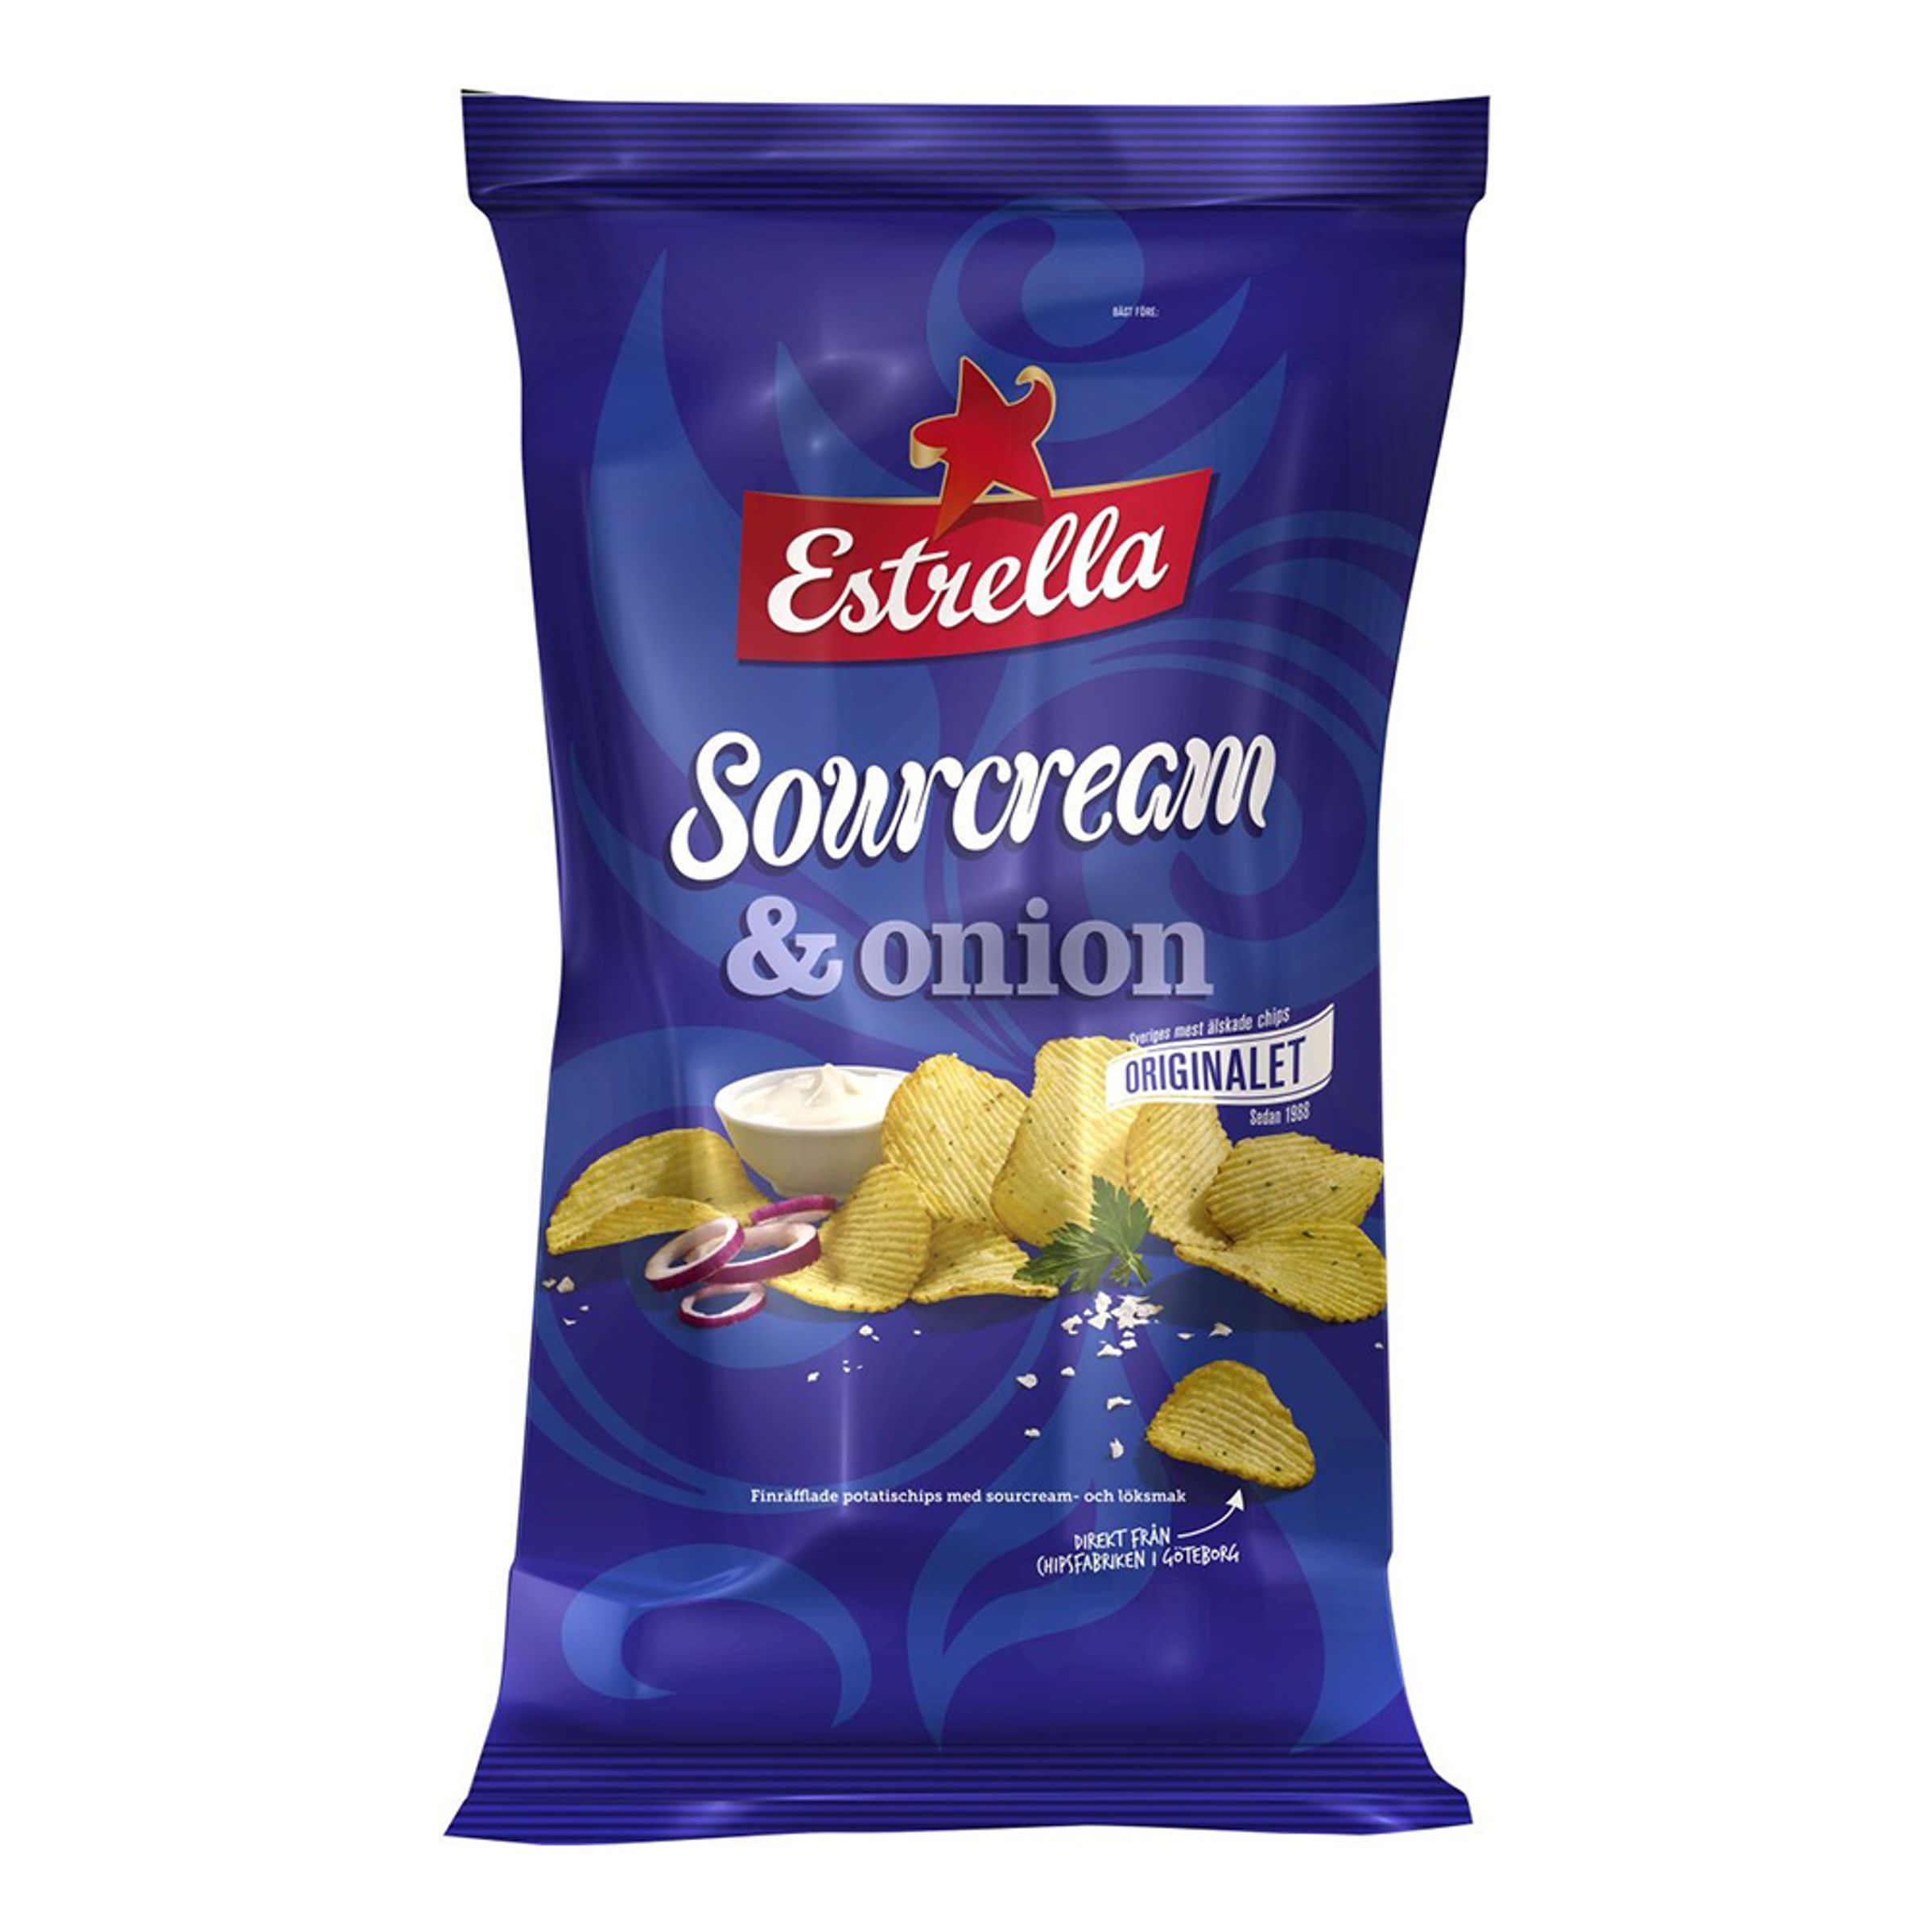 Estrella Sourcream & Onion Mini - 1-pack